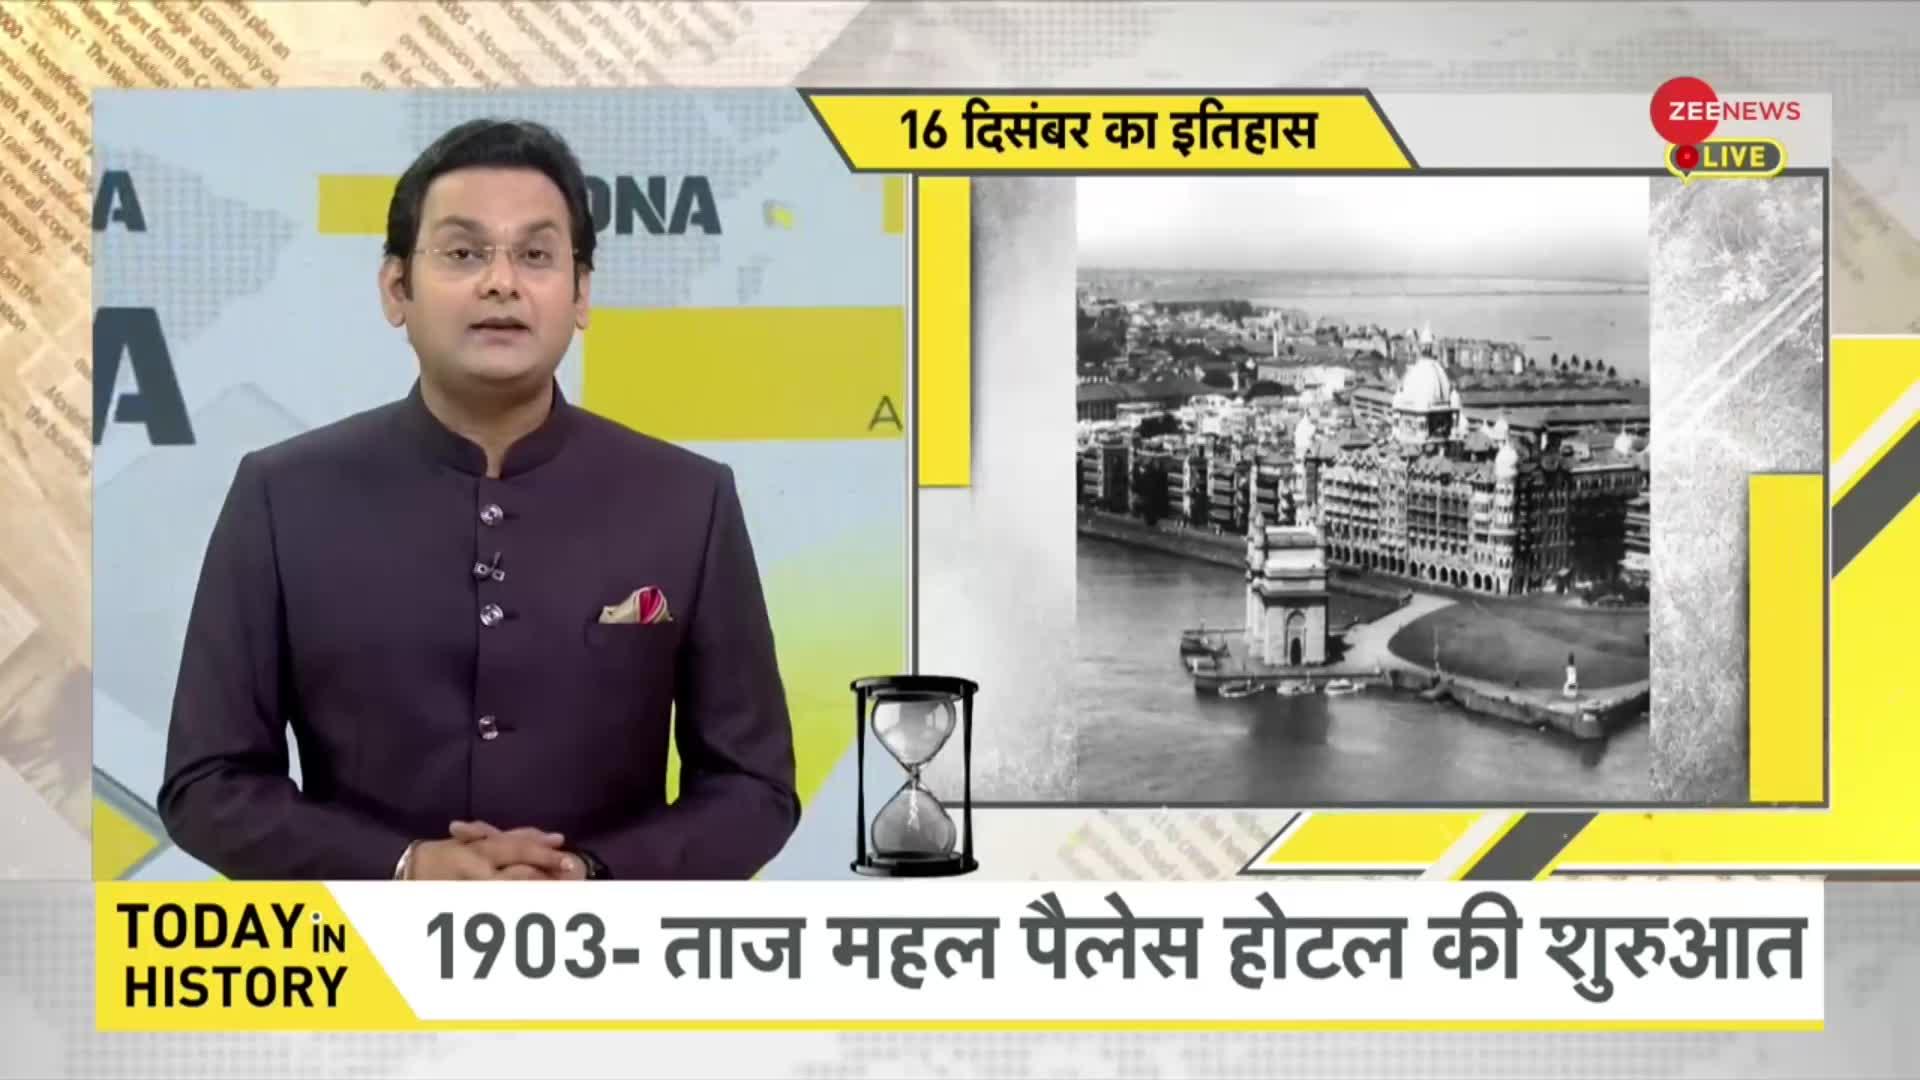 DNA: जब 1971 के युद्ध में भारत ने पाकिस्तान को हराया था